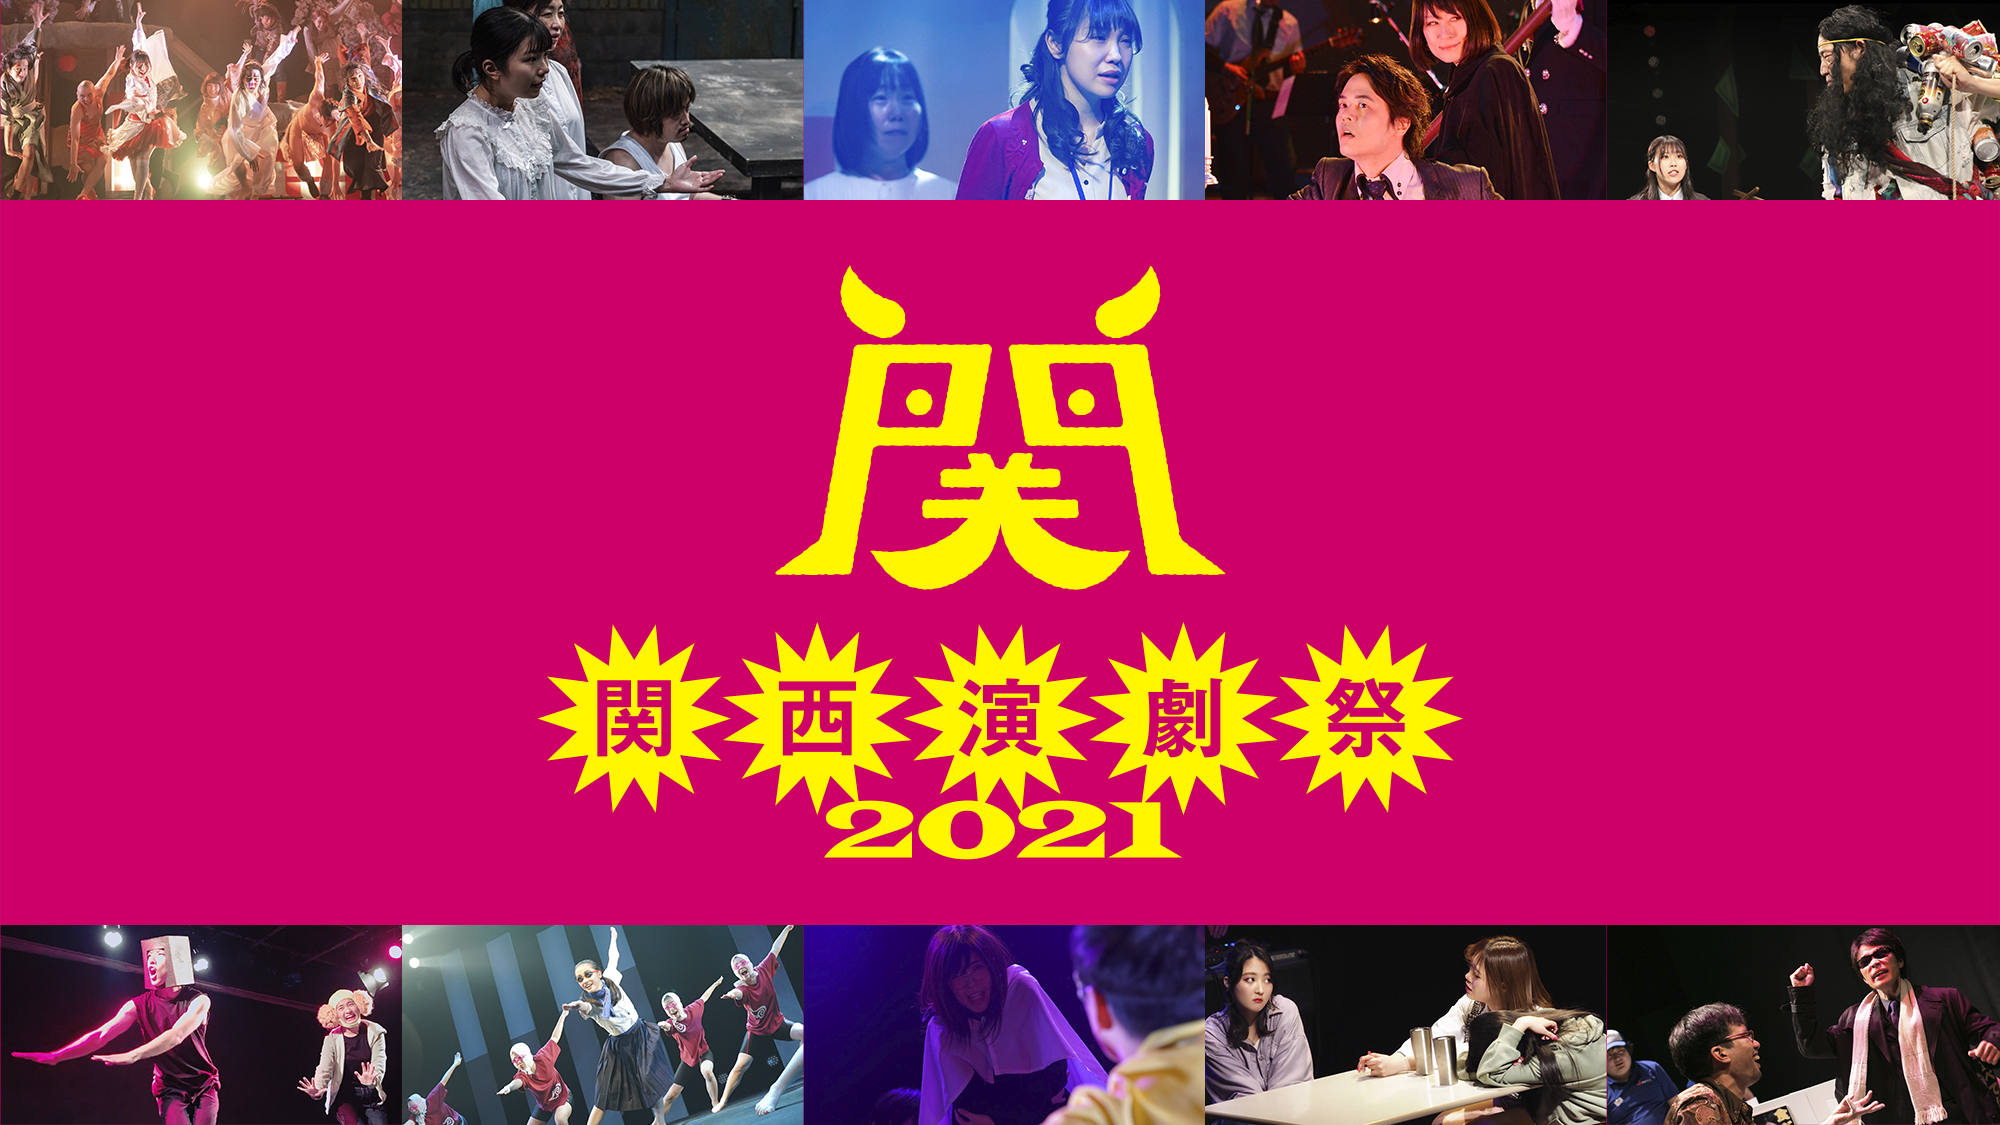 板尾創路があなたの思い出を映像化!関西演劇祭2021クラウドファンディング開始!